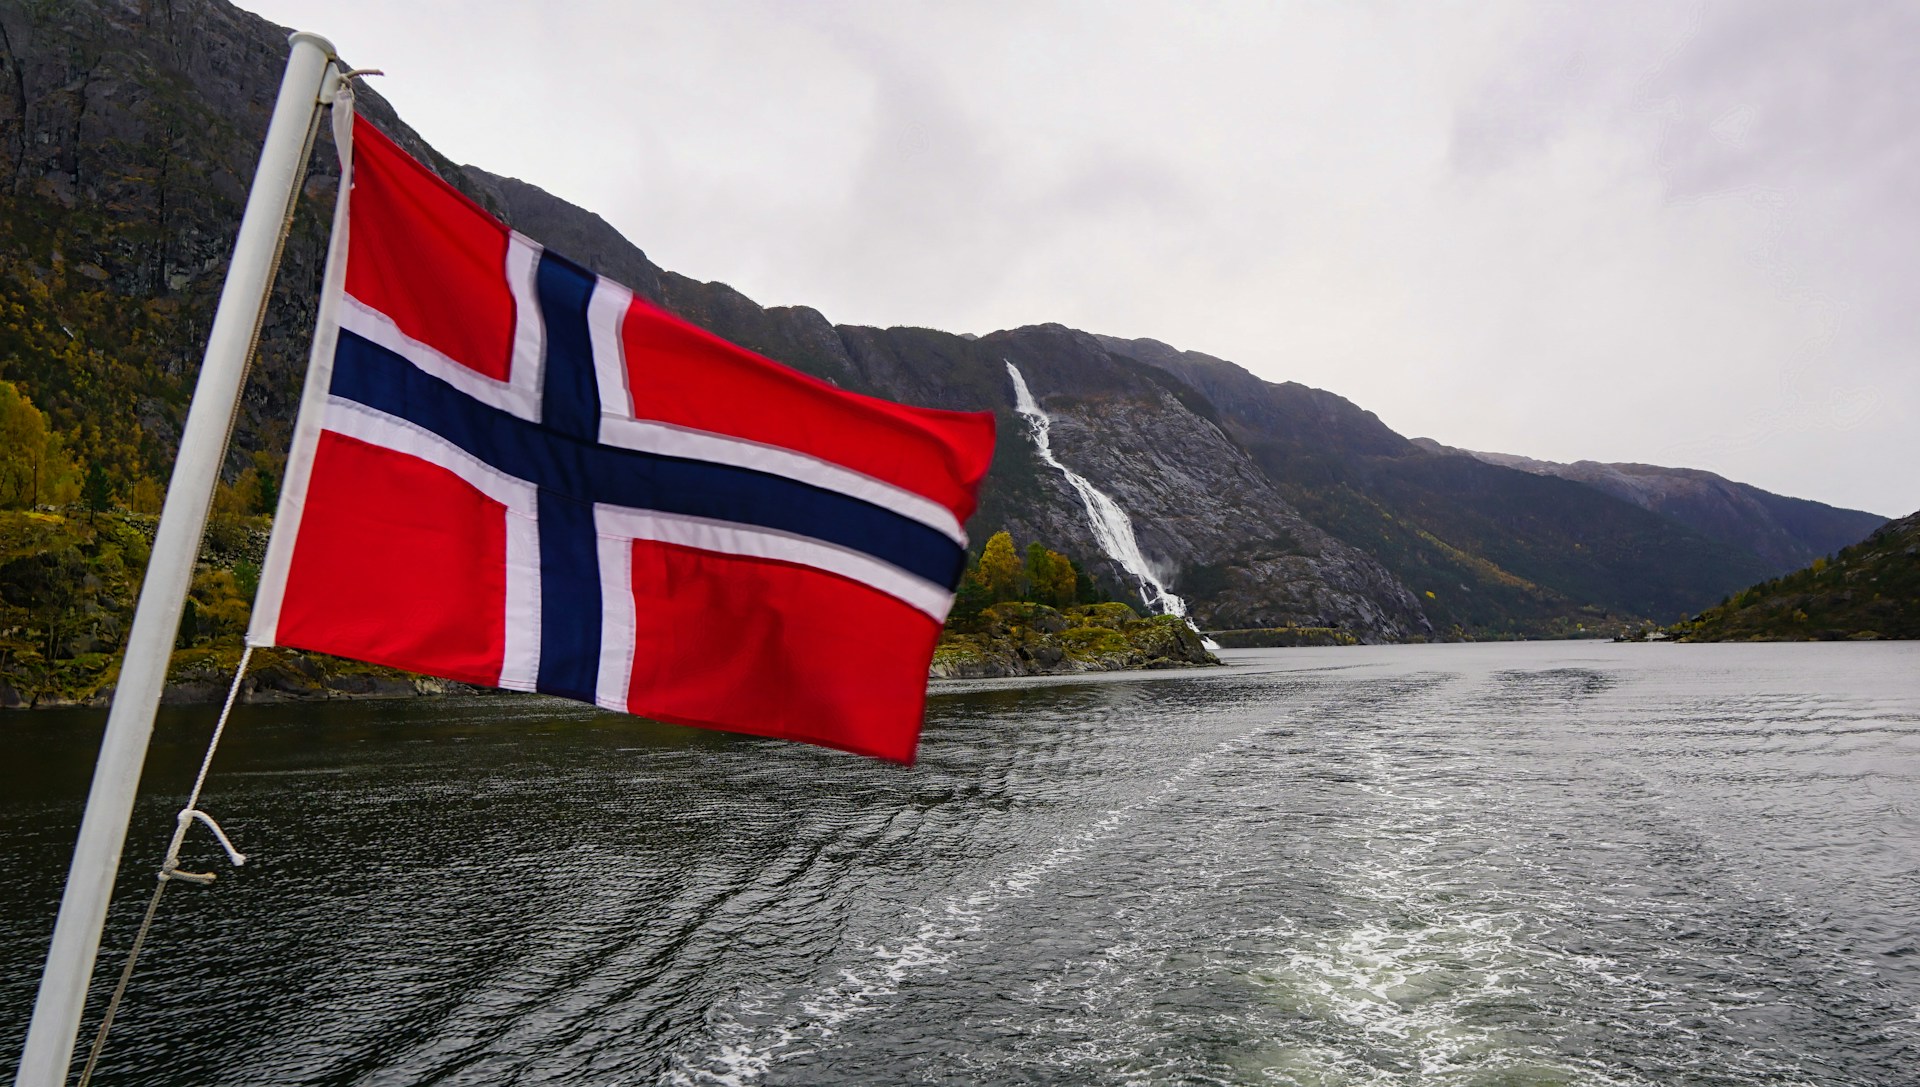 Norwegians Make Deals in Clean Tanker Segment